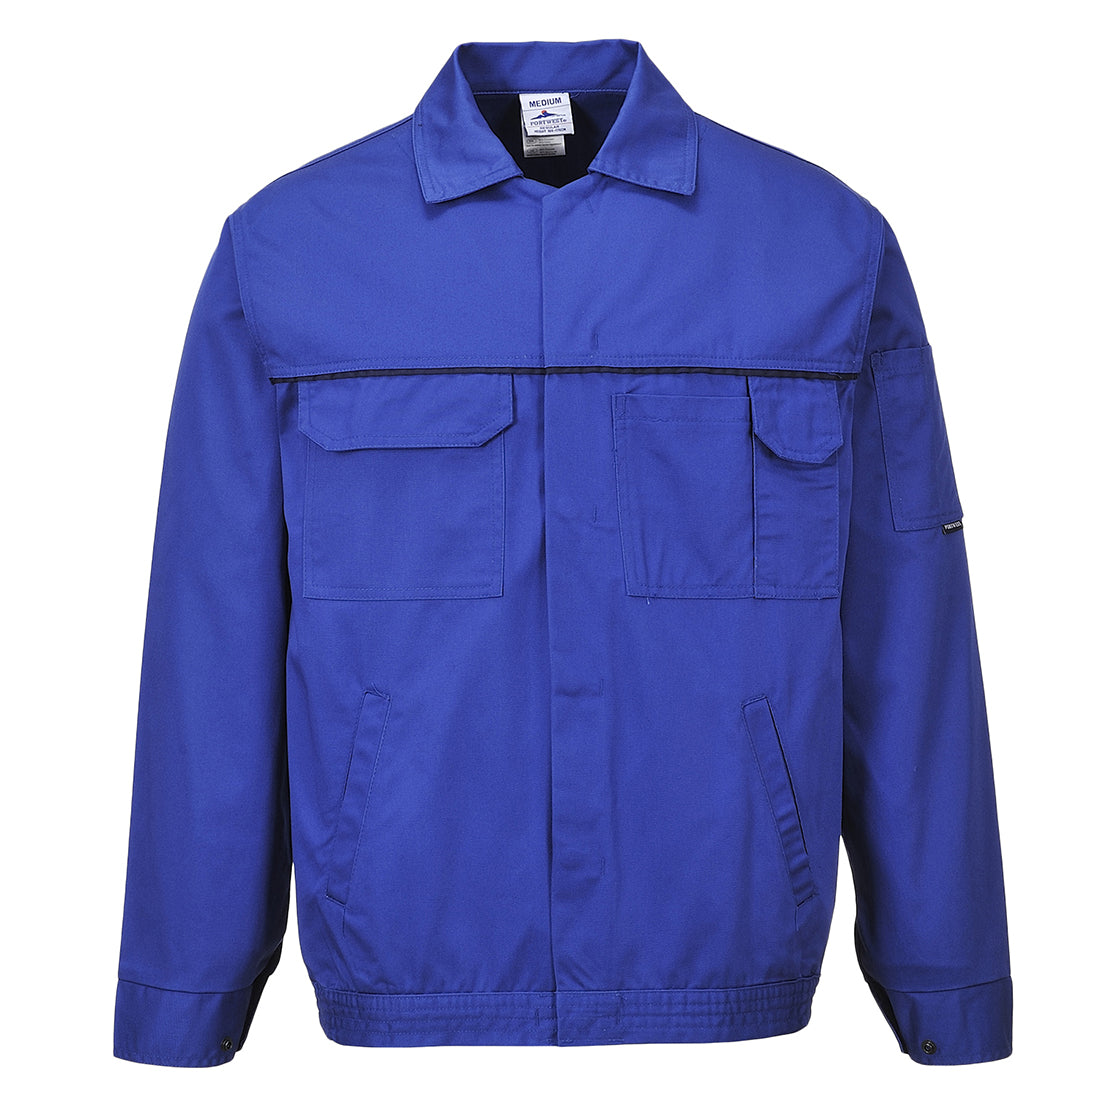 Portwest 2860 - Royal Blue Classic Work Jacket Coat sz XXL Regular